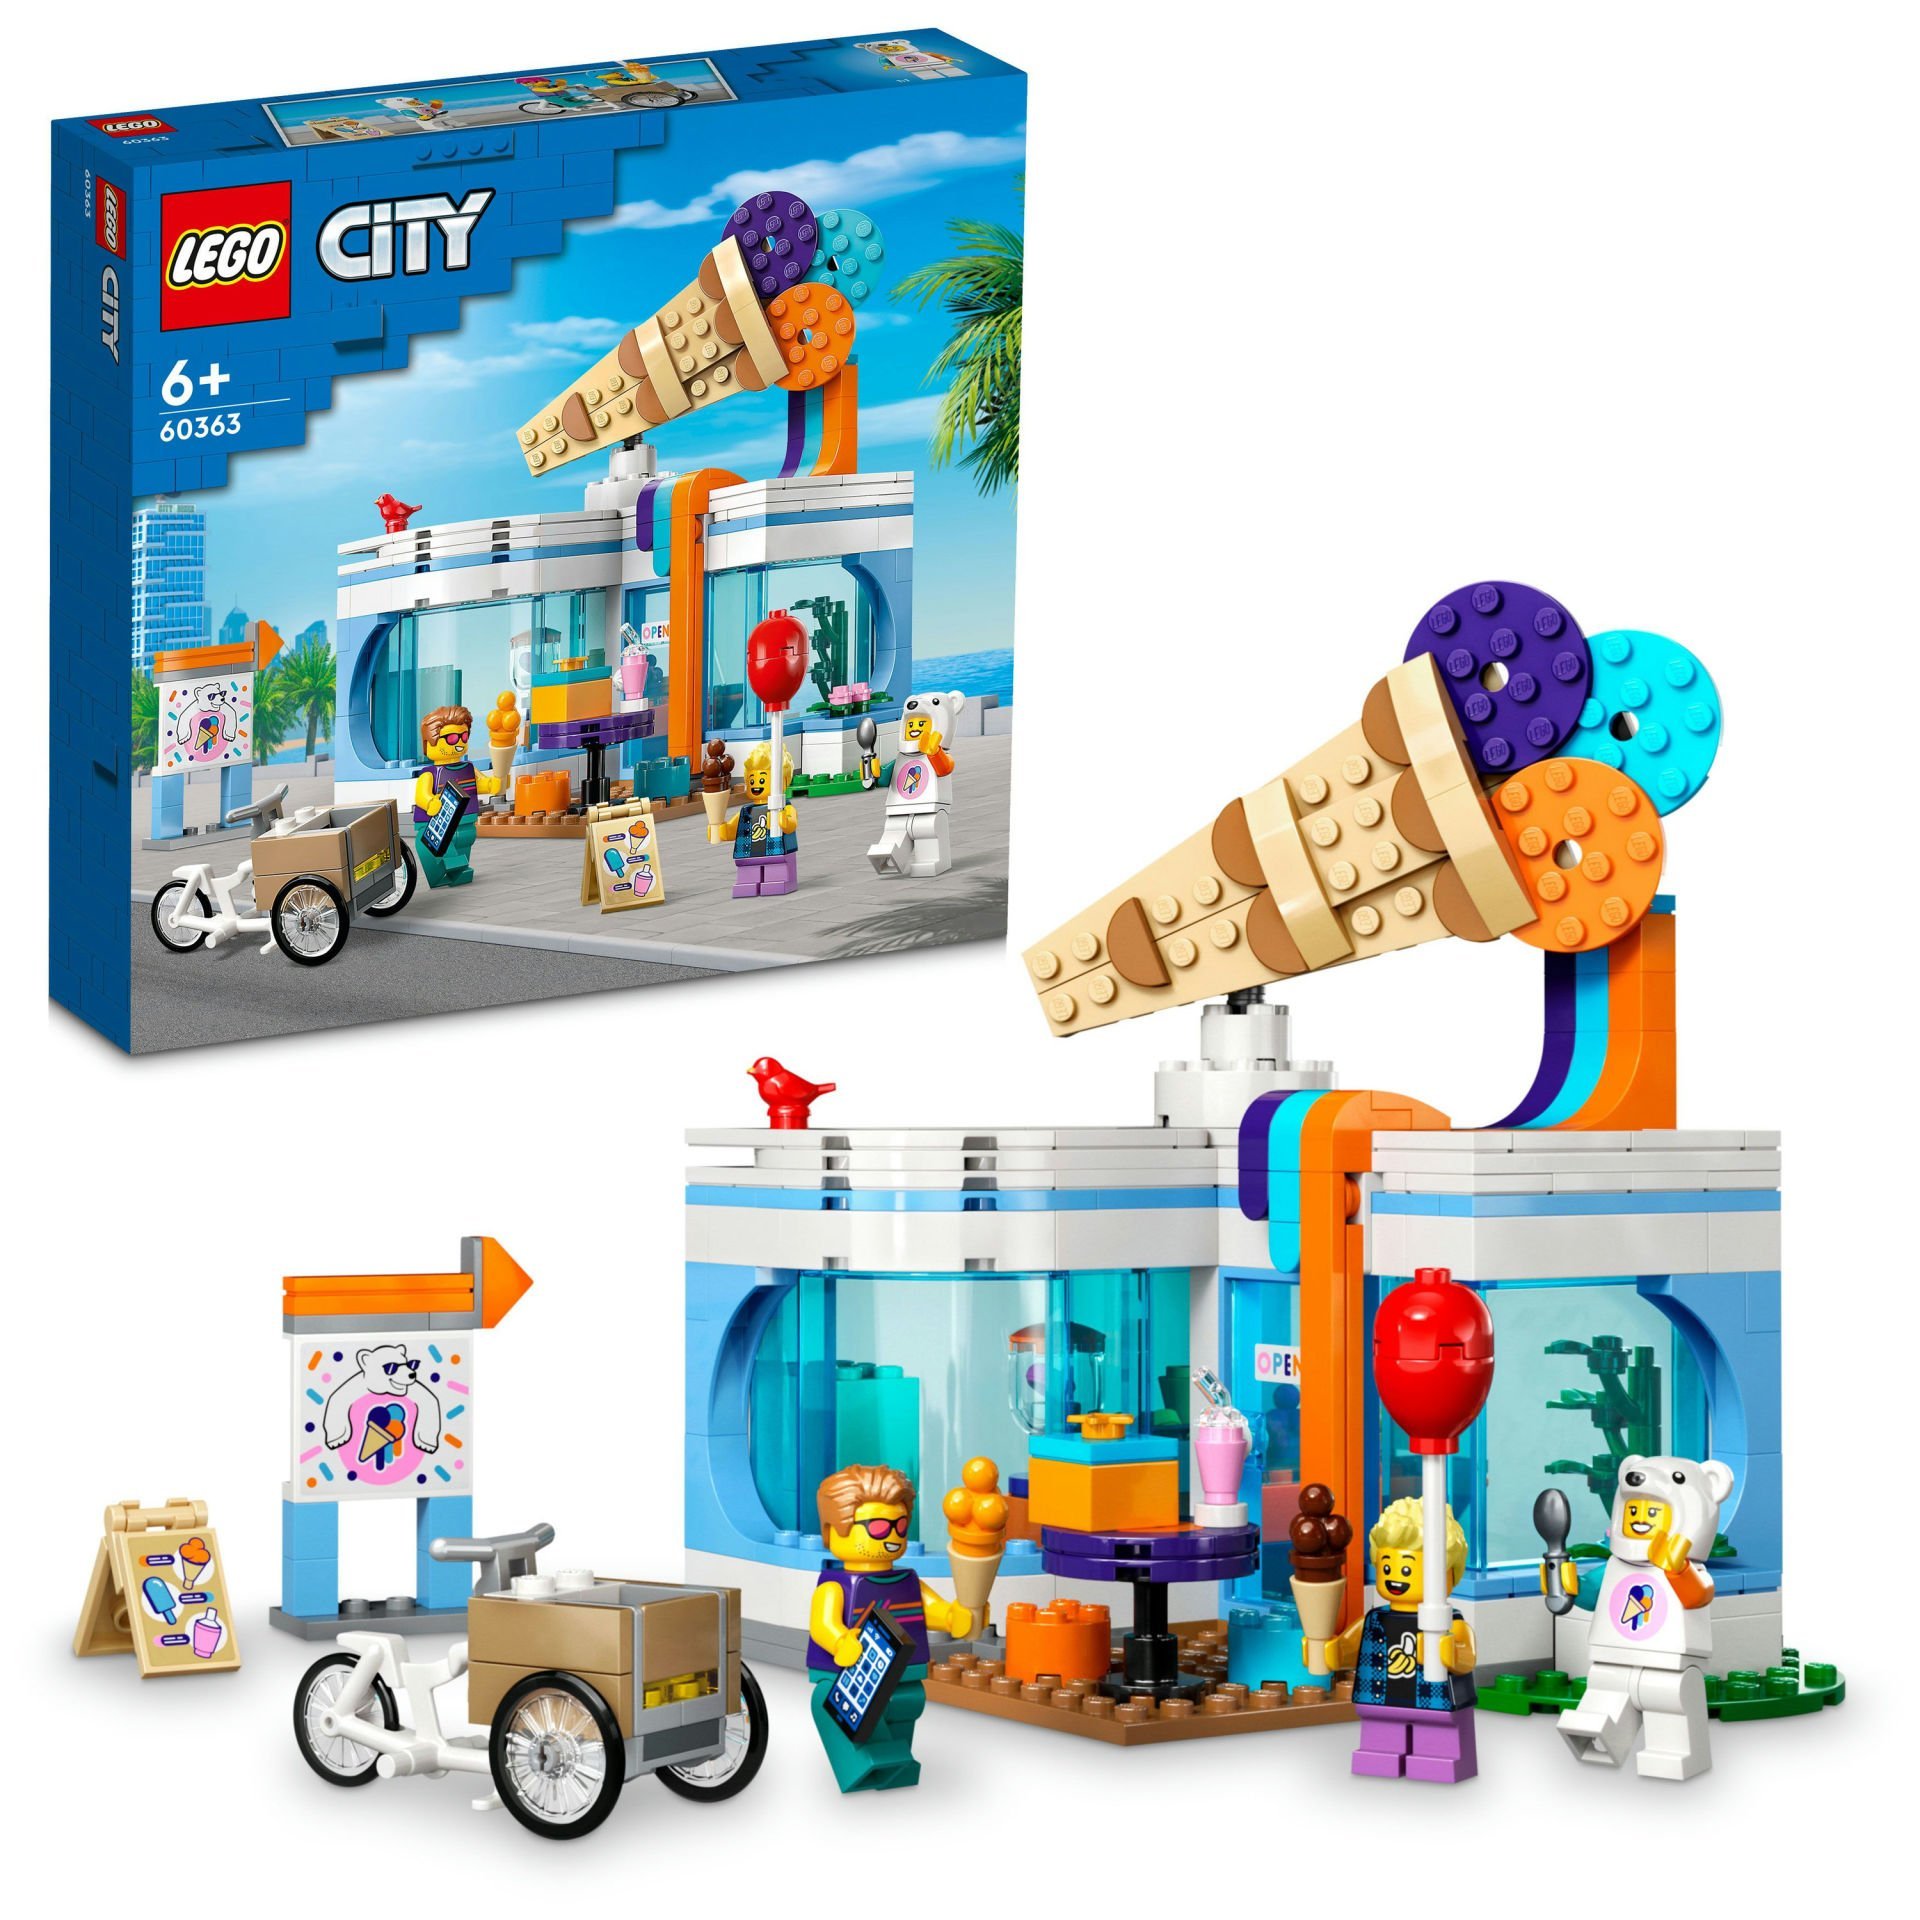 LEGO® City Dondurma Dükkanı 60363 - 6 Yaş ve Üzeri Çocuklar için Oyuncak Yapım Seti (296 Parça)